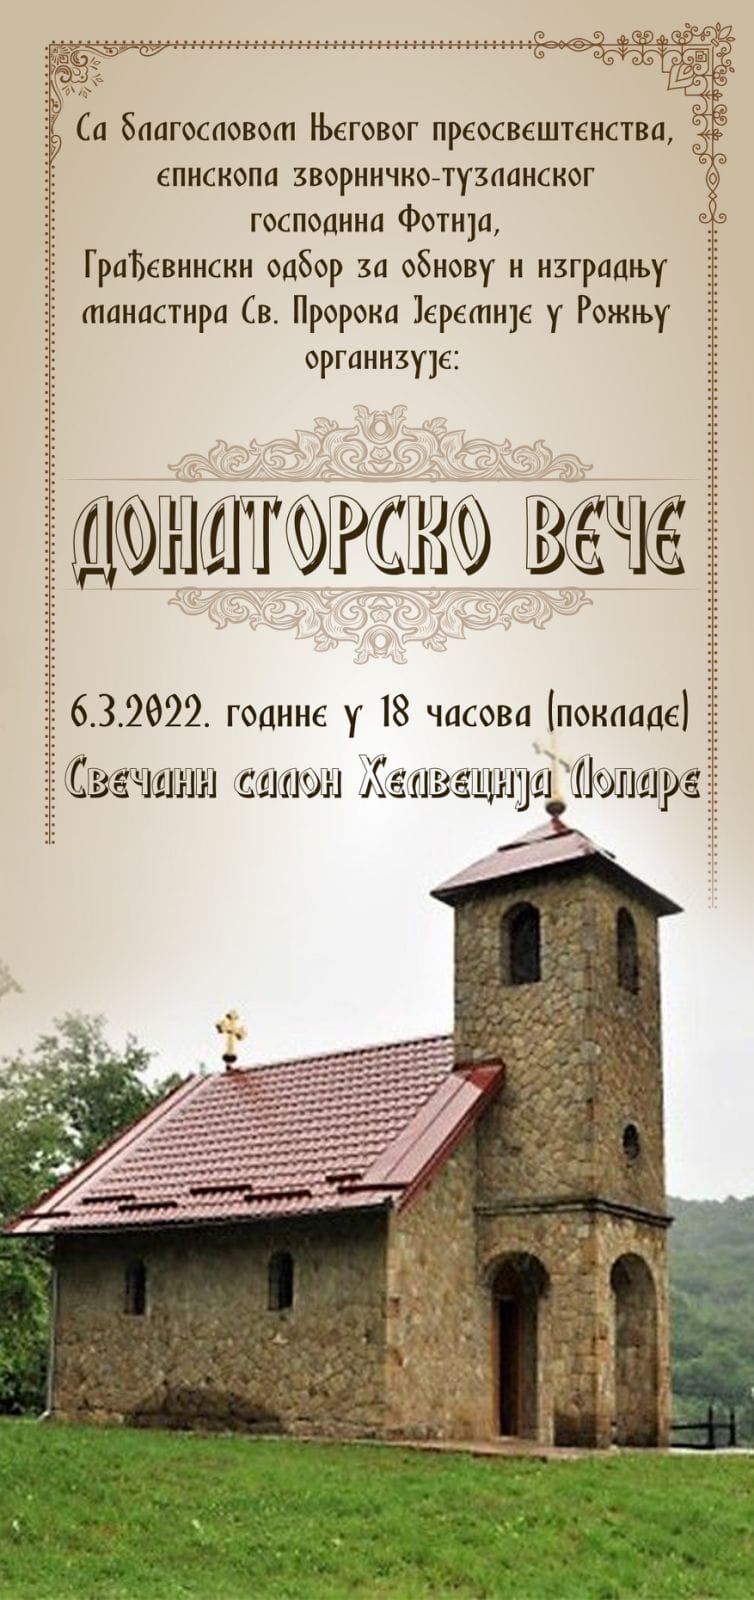 Izgradnjom i obnovom manastirskog konaka doprinesimo očuvanju srpskog identiteta i pravoslavlja na Majevici